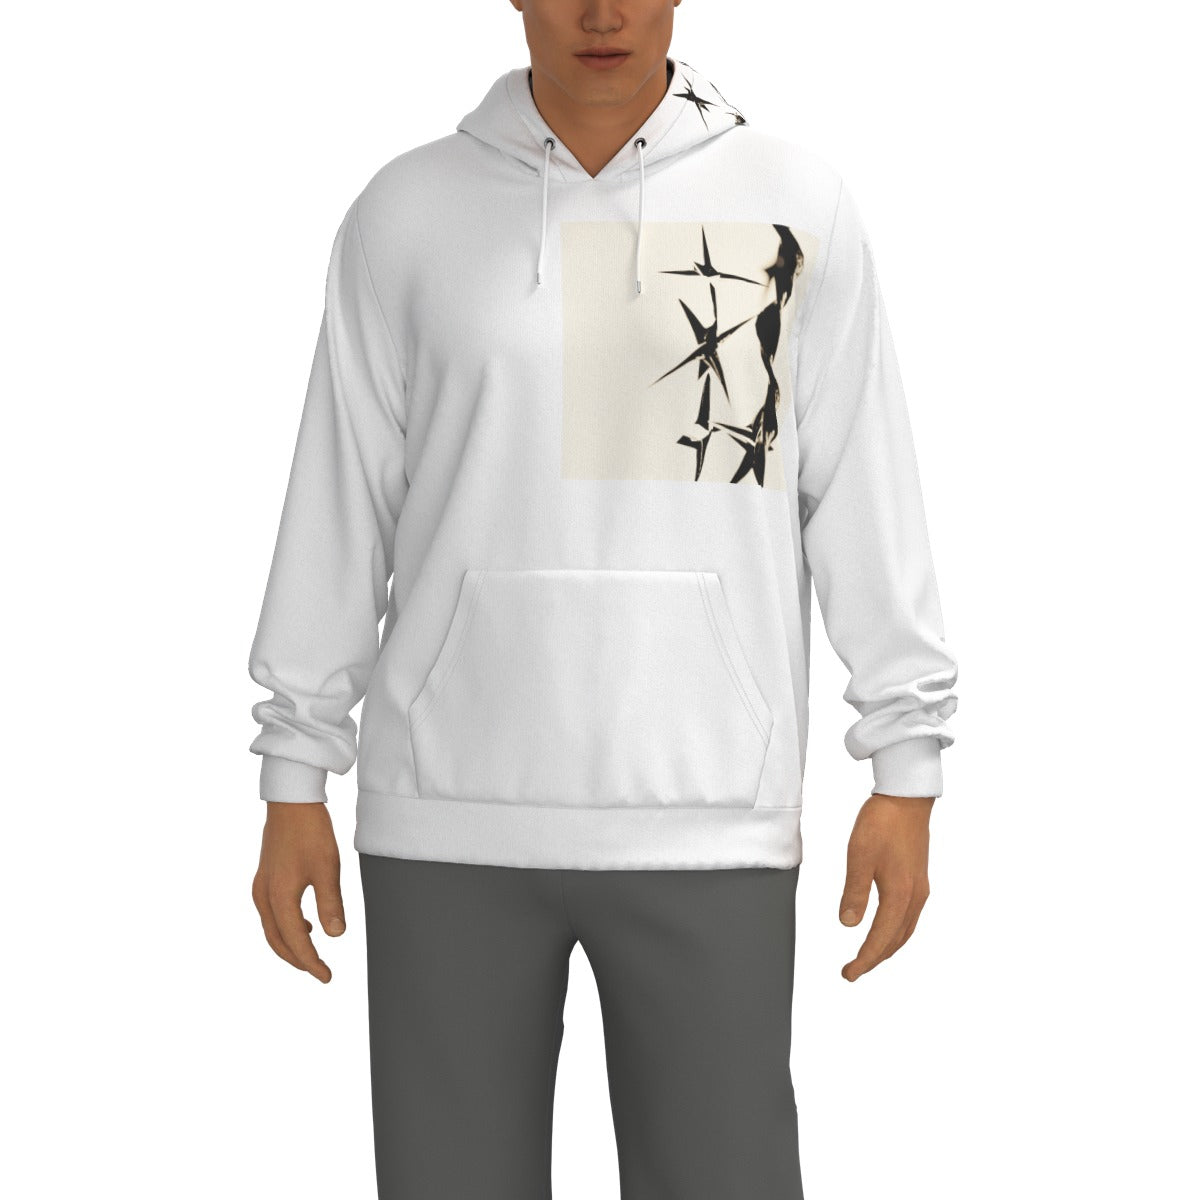 "SPIKED" hoodie design